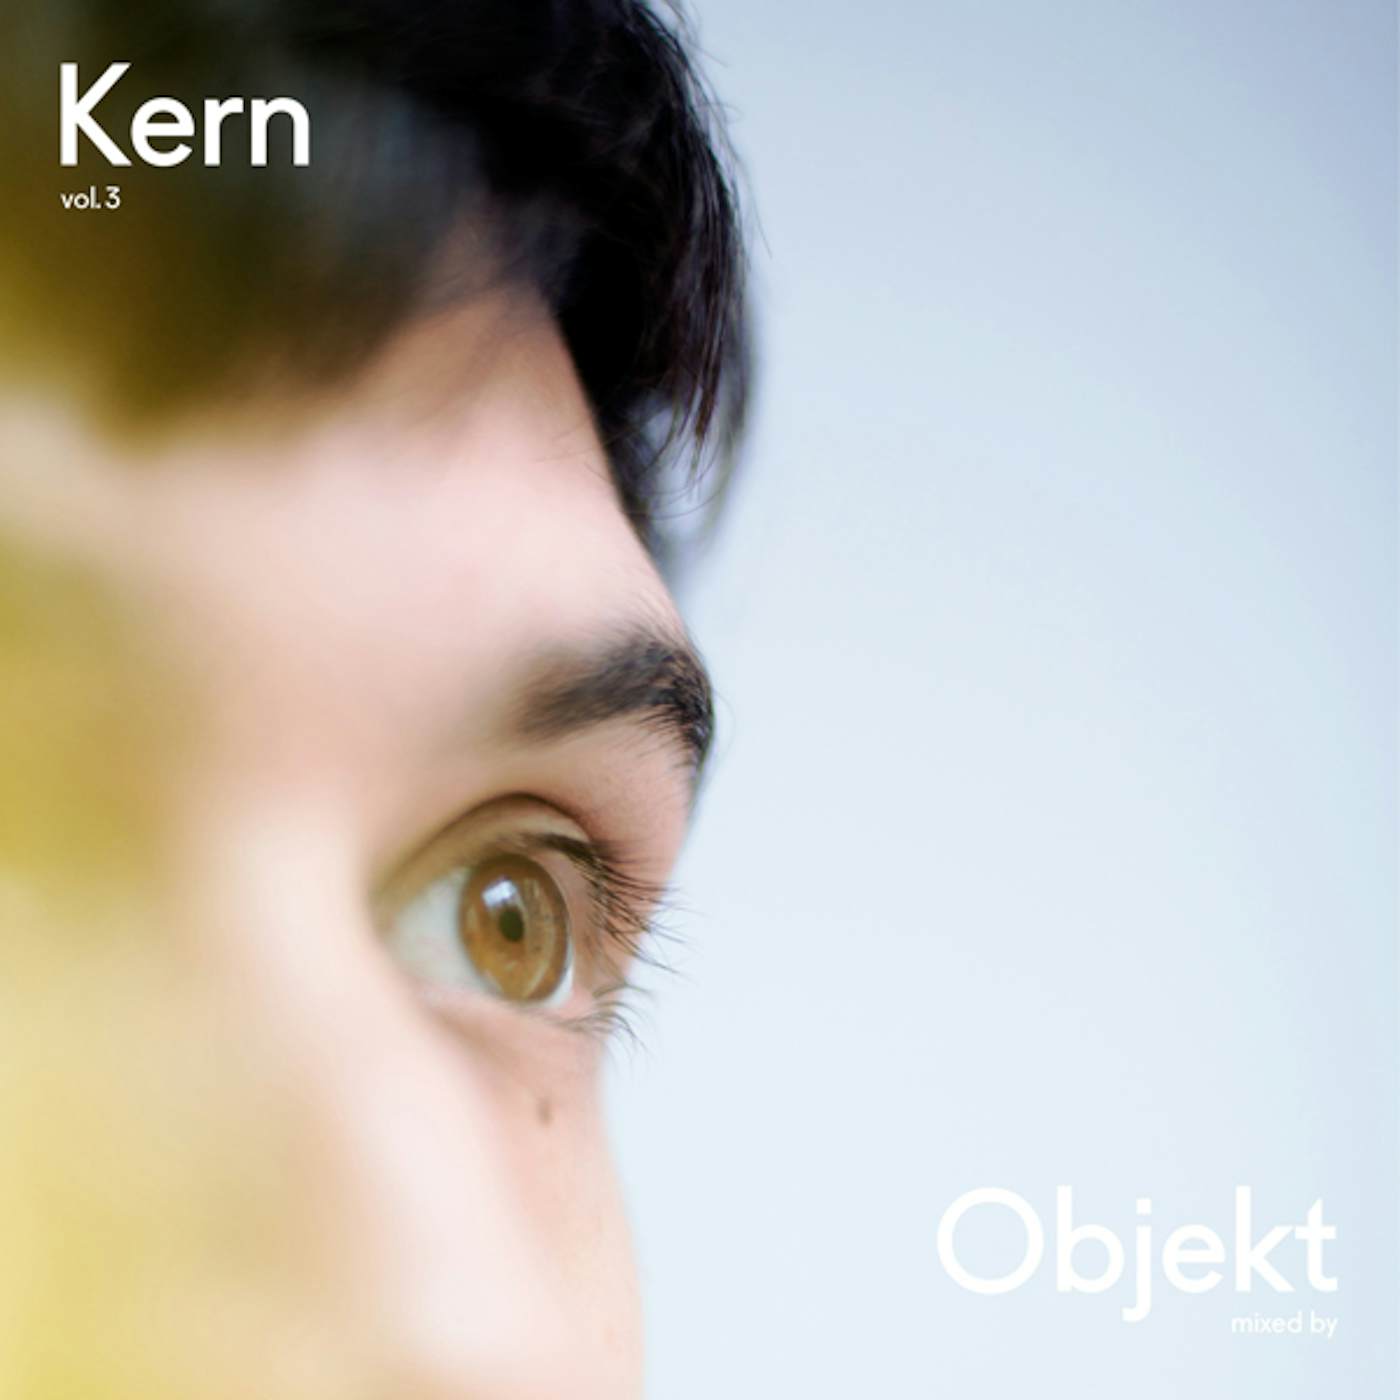 Objekt KERN VOL.3 CD